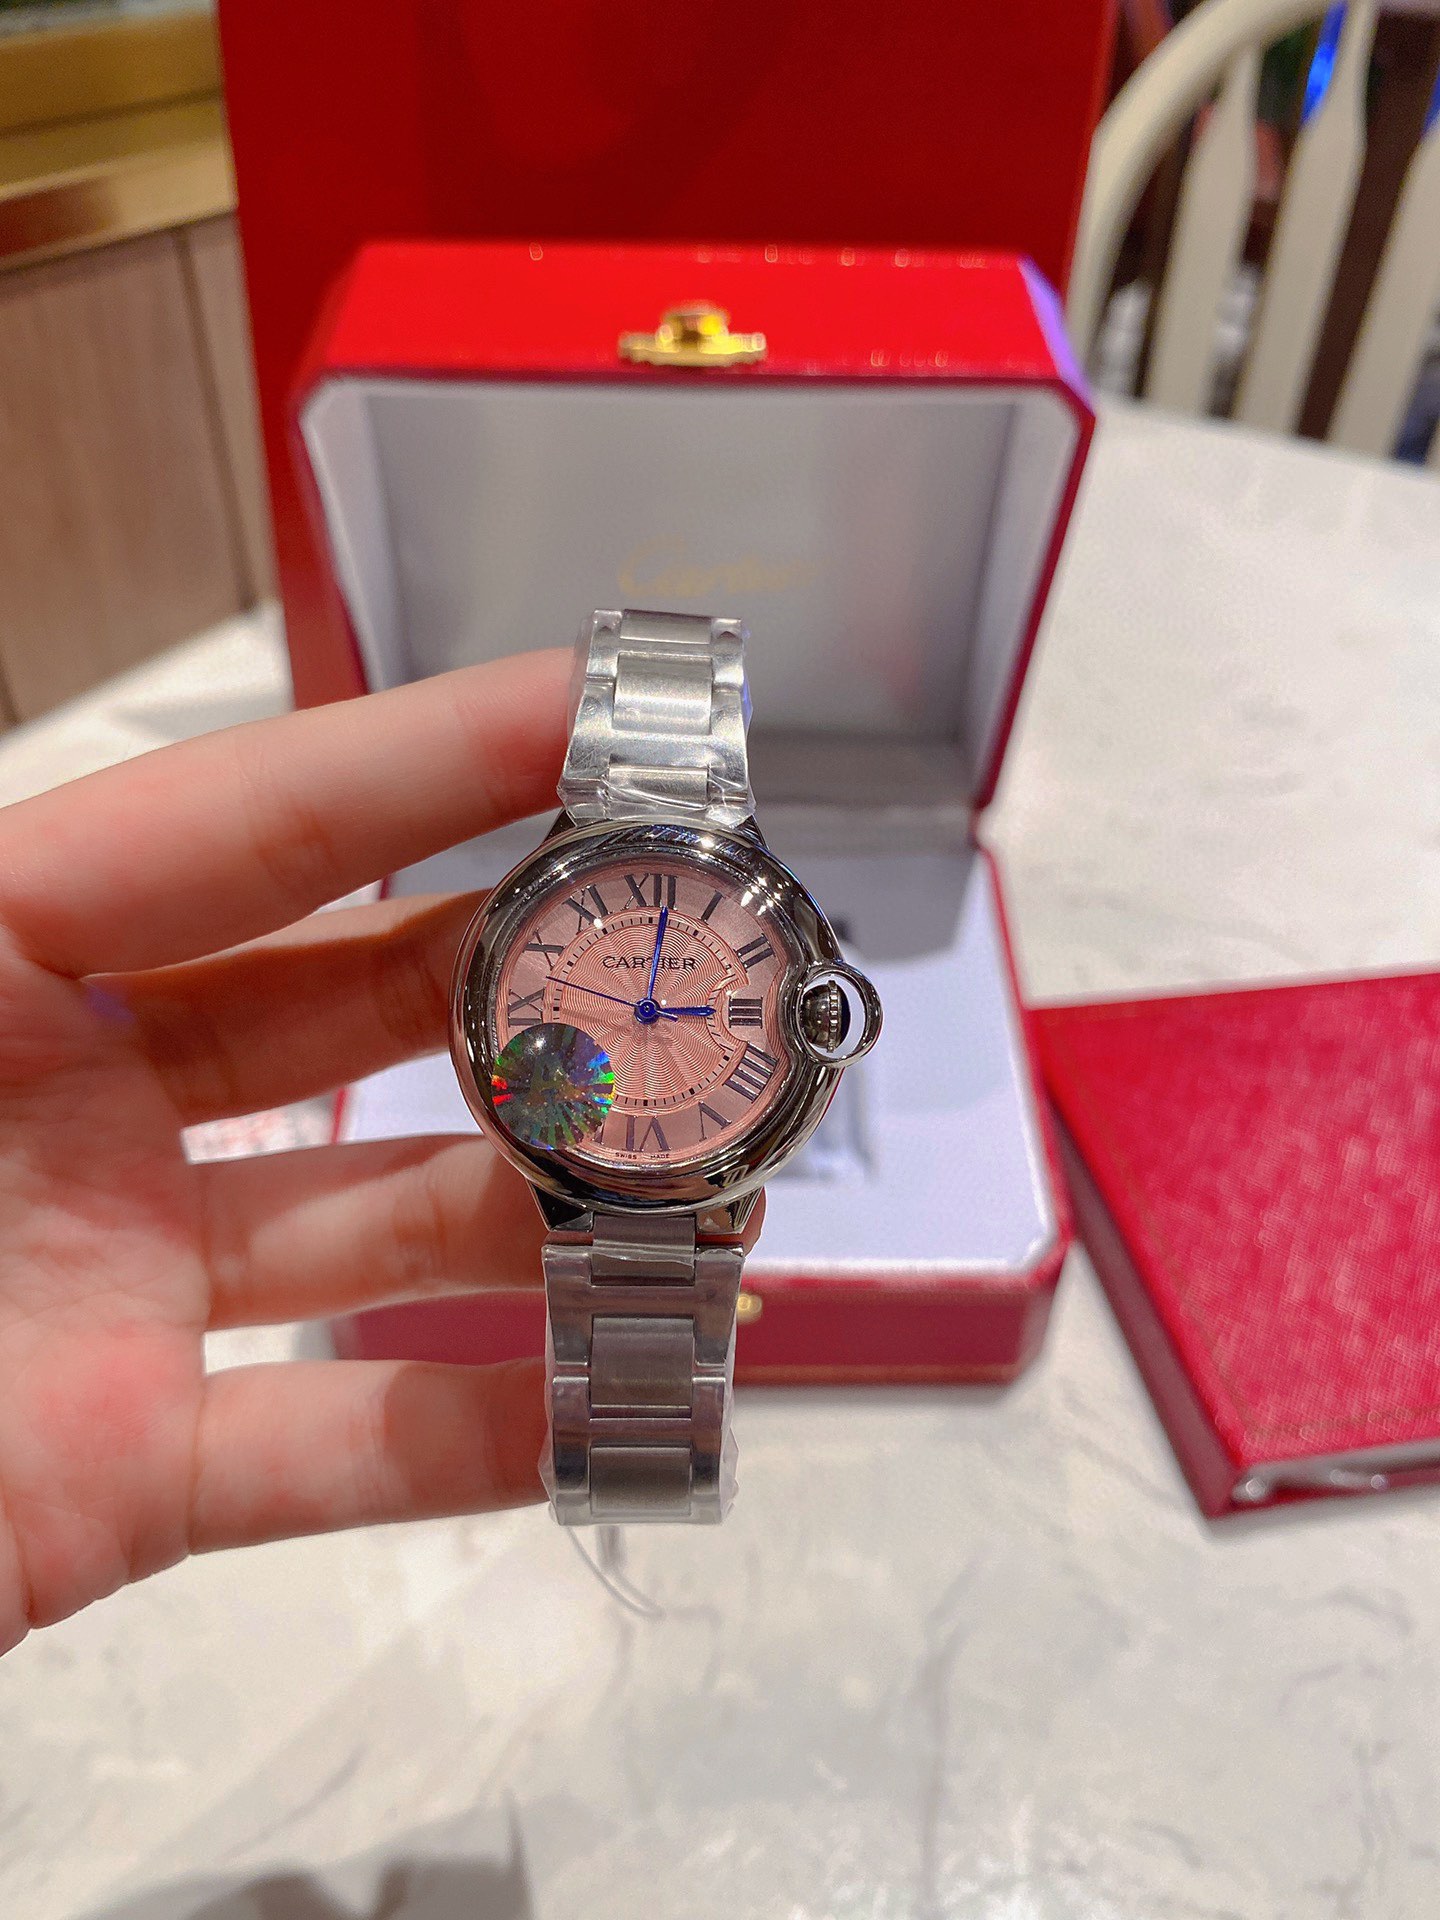 CARTIERカルティエみたいな時計偽物 フランス 薄い Cartier  腕時計 スチールバンド ピンク_3